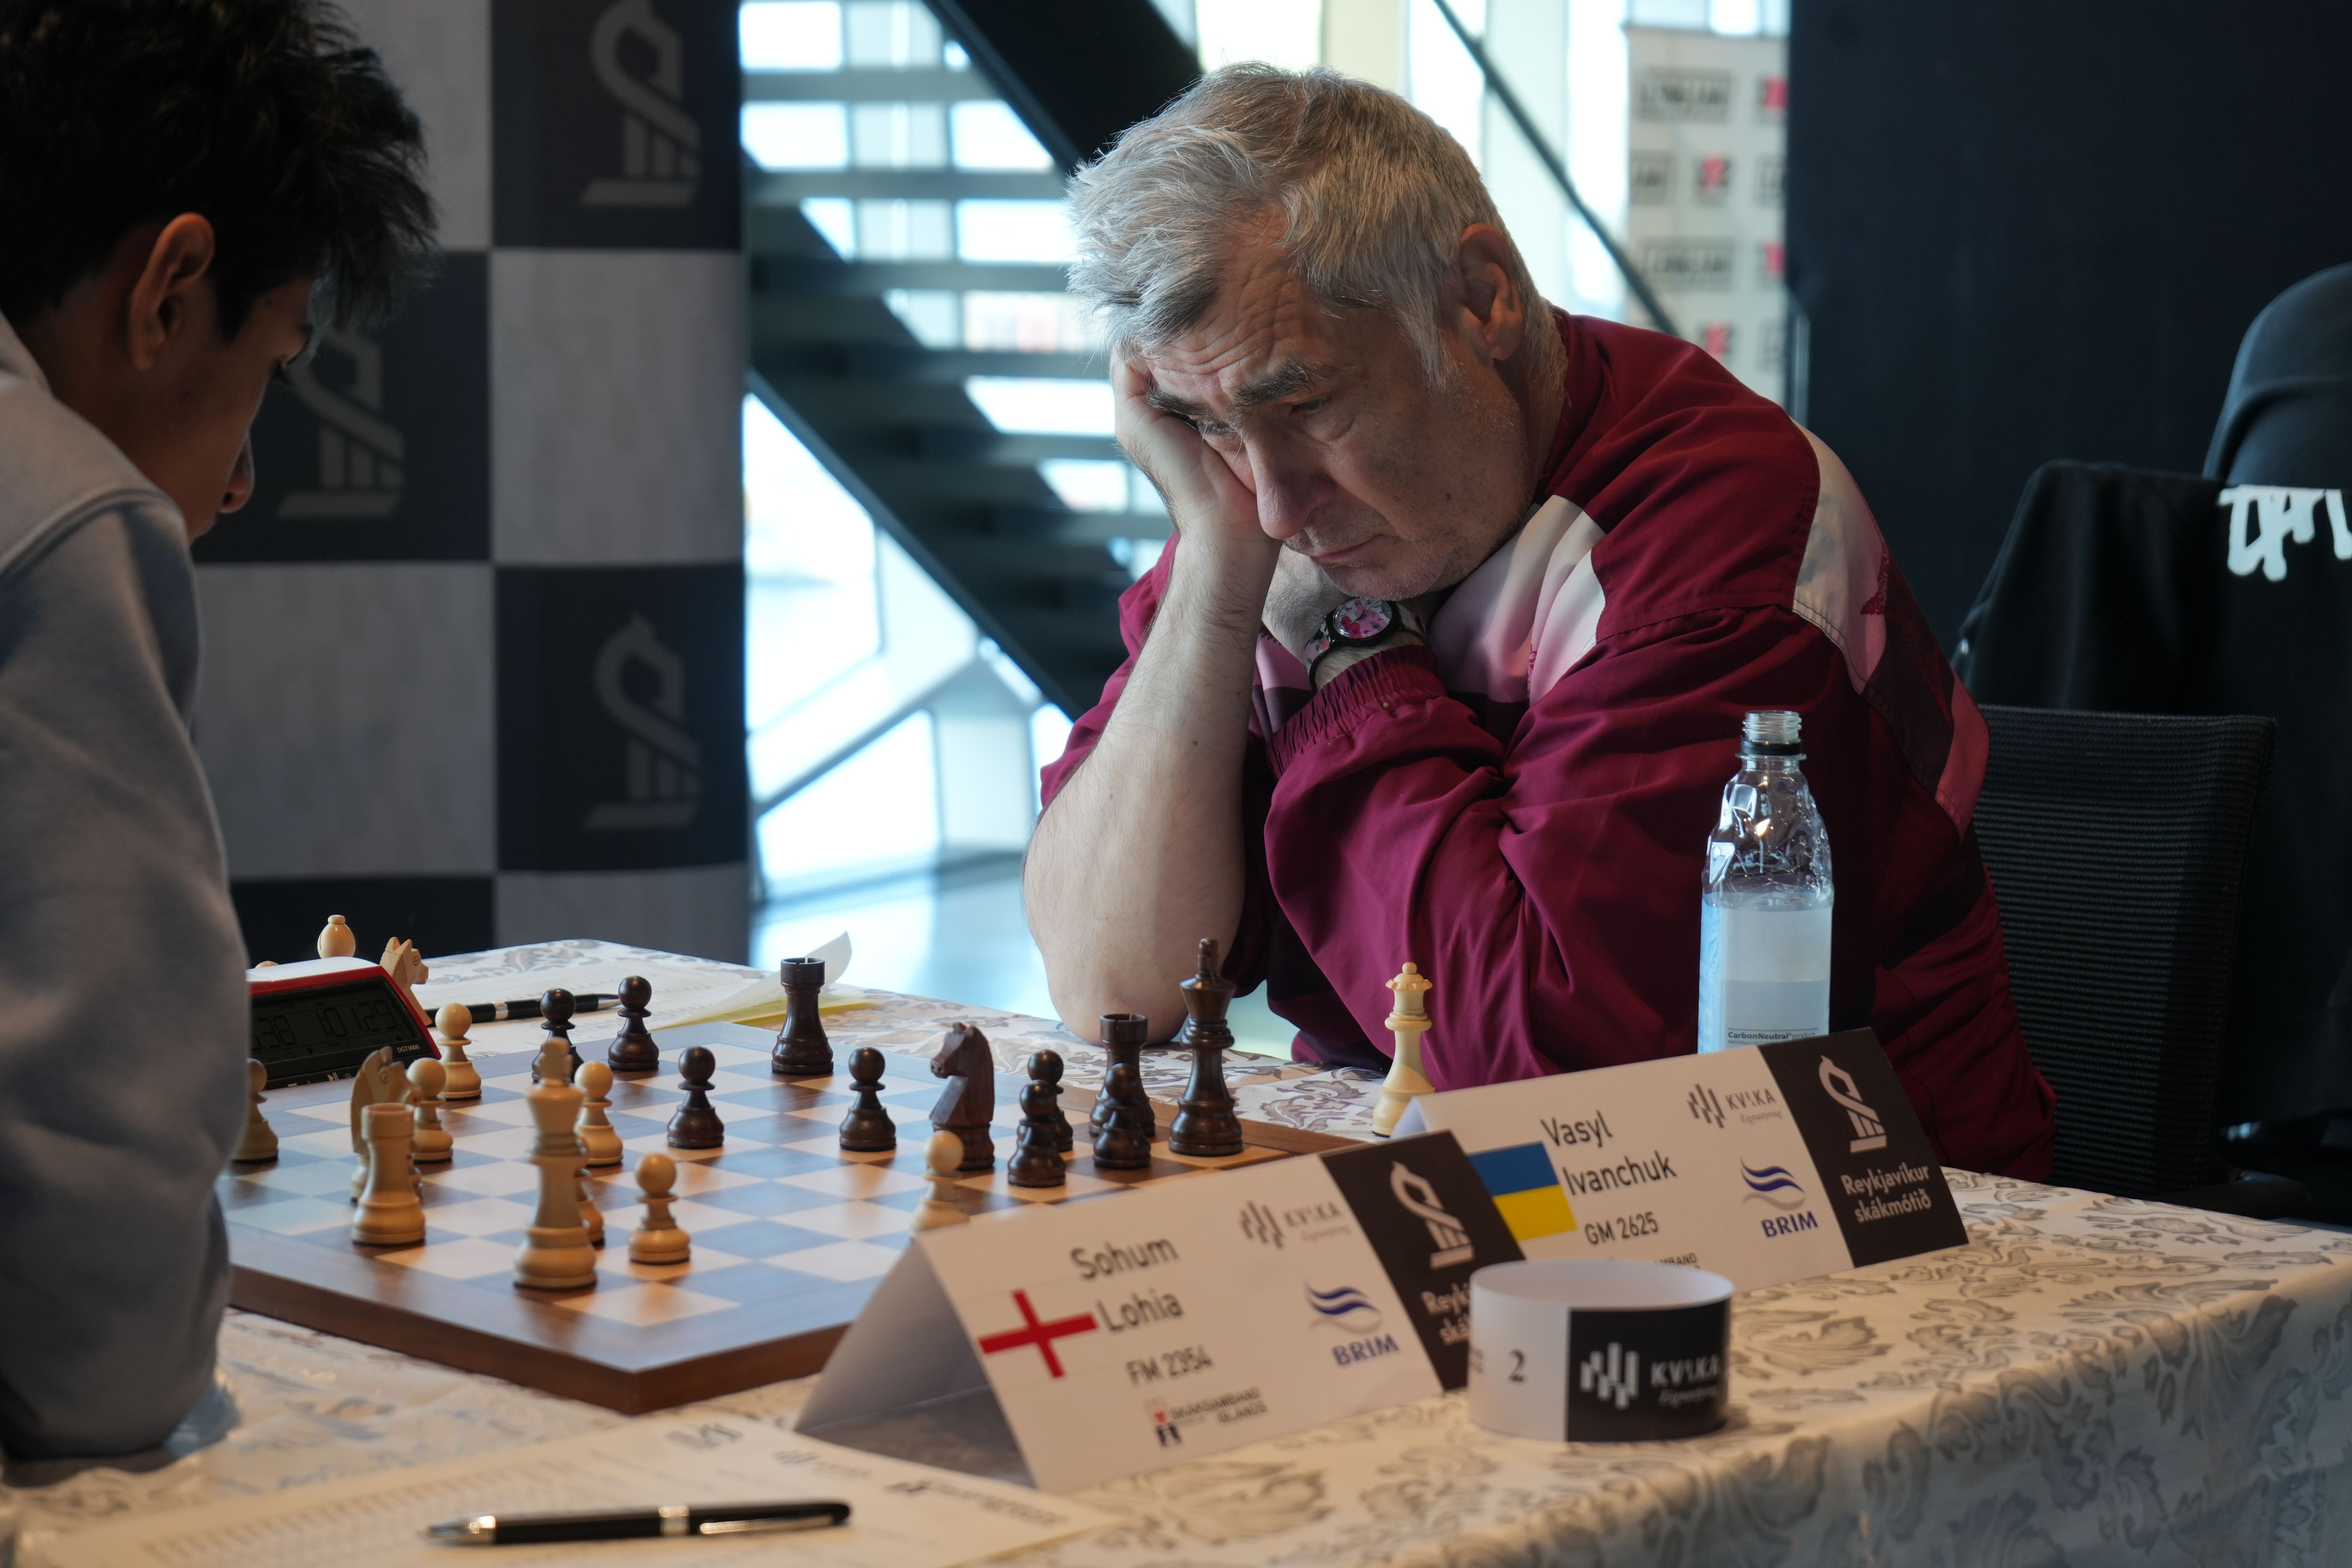 GM vassily ivanchuk vasyl chesscom chess chucky